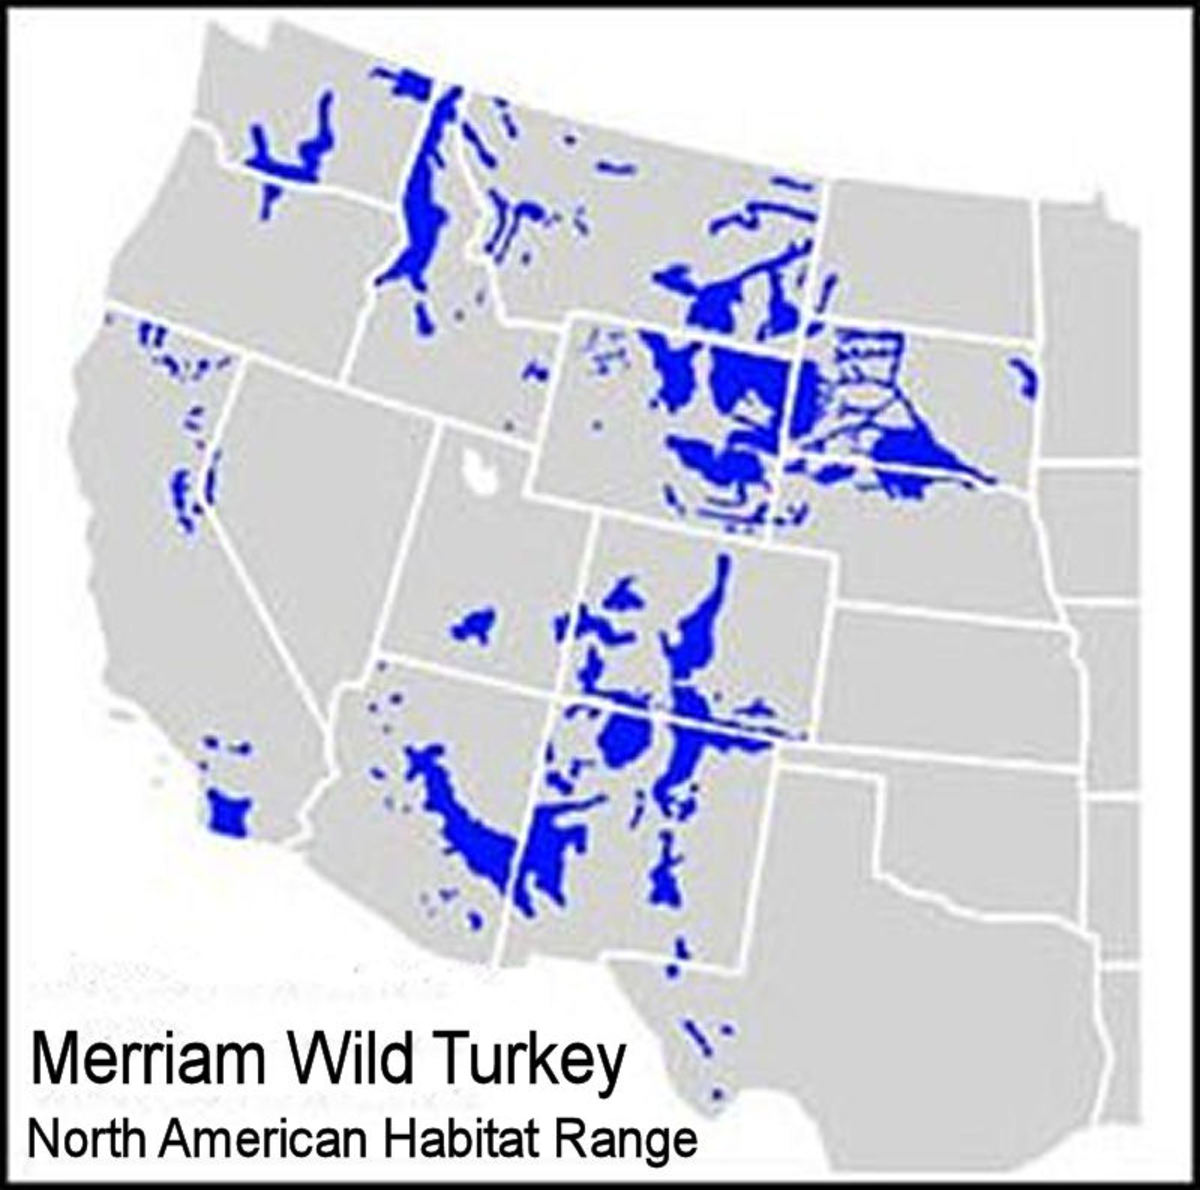 The Merriam wild turkey Regional Habitat